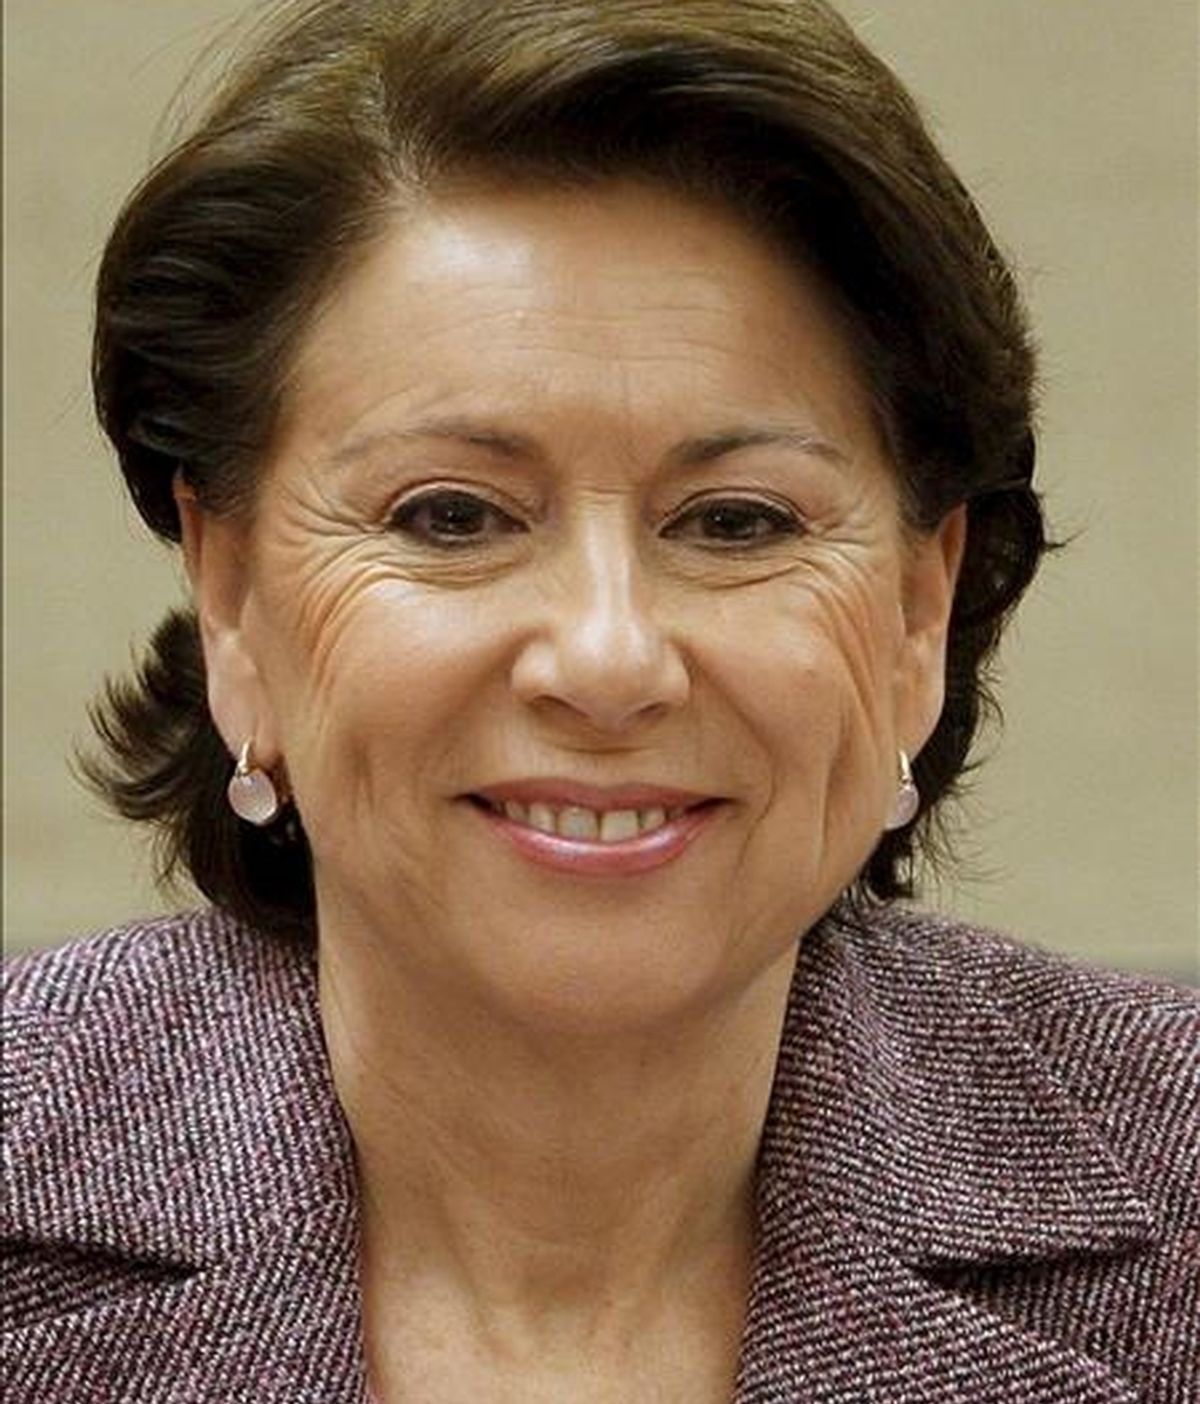 La ex ministra de Fomento Magdalena Álvarez, quien irá en el tercer puesto del PSOE a las próximas elecciones europeas. EFE/Archivo